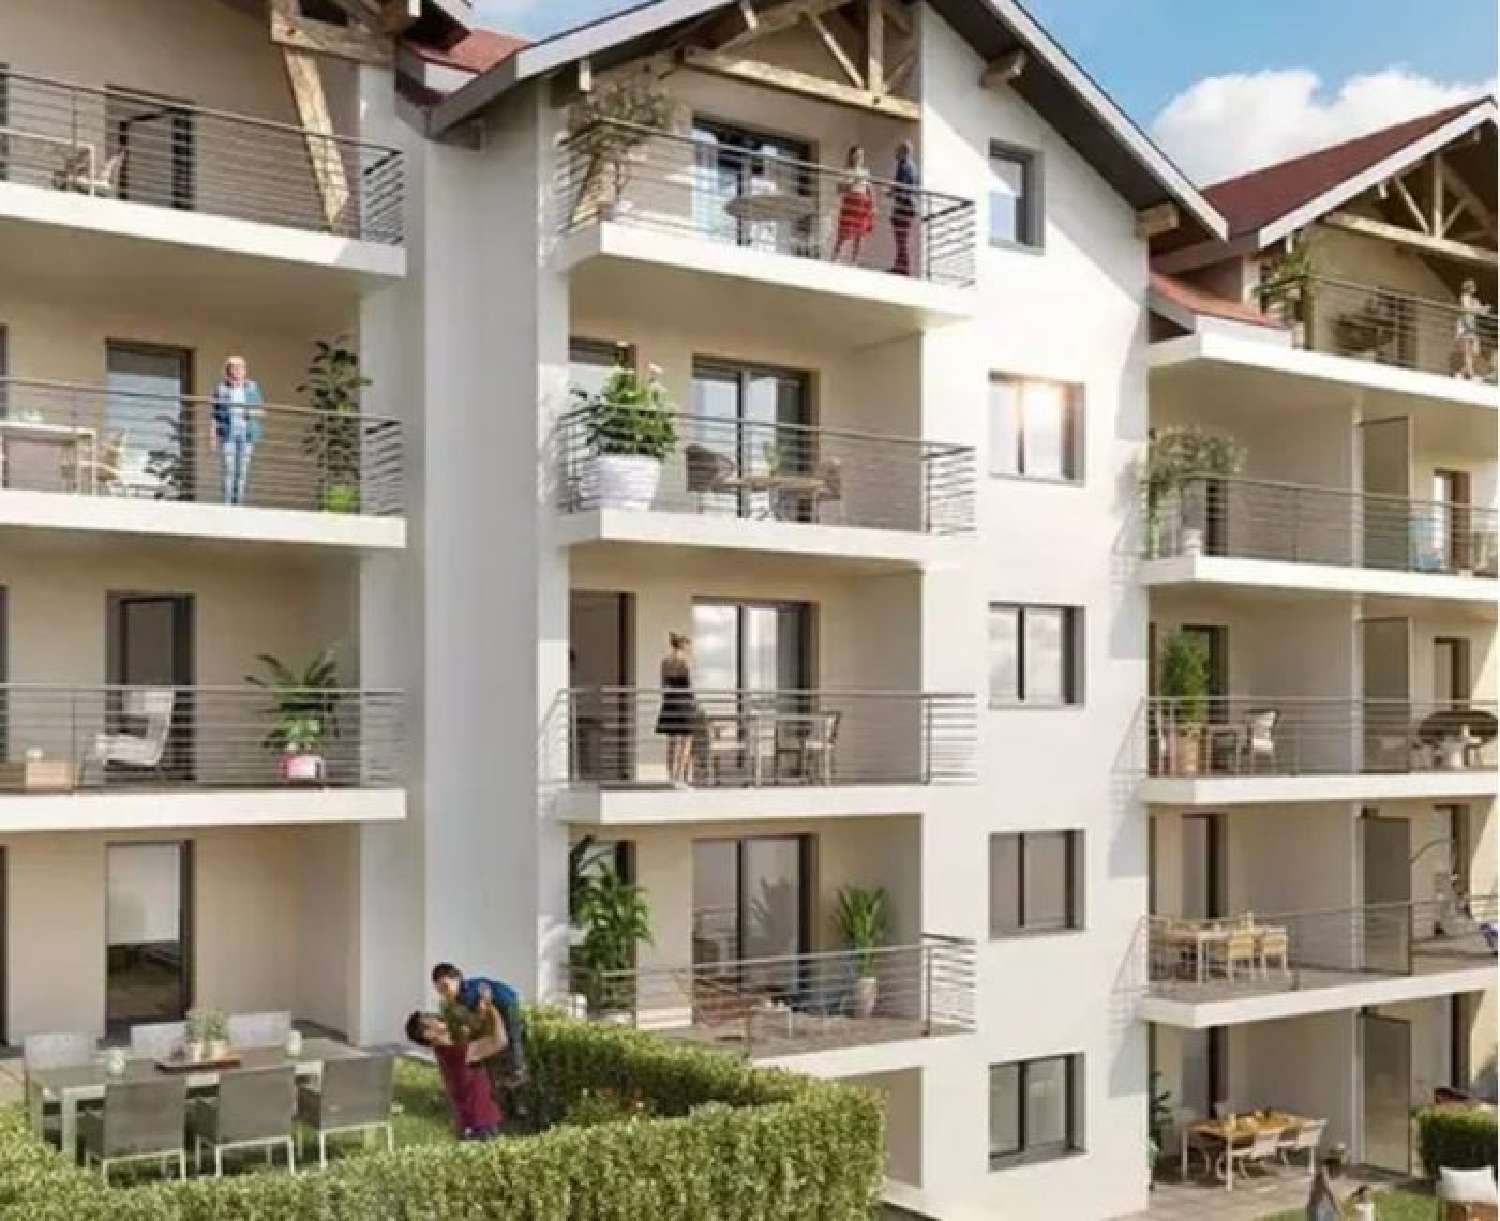  à vendre appartement Frangy Haute-Savoie 1